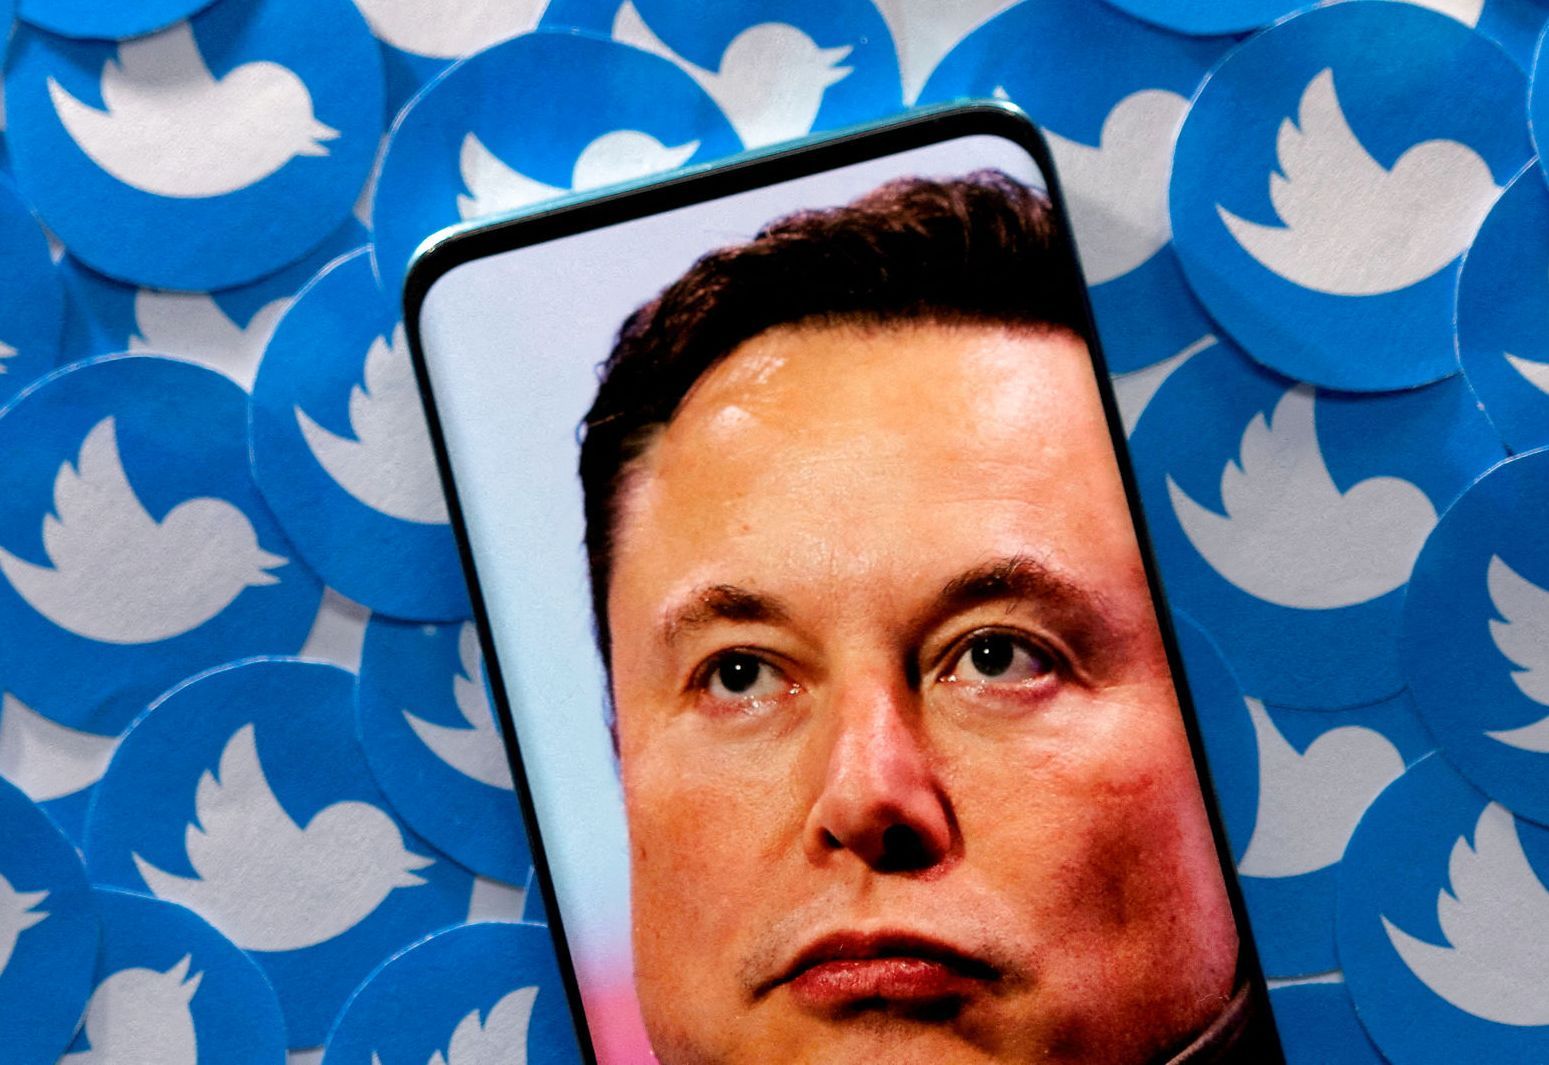 Efter Elon Musks overtagelse af Twitter er det blevet muligt at købe et blåt flueben. Det benytter falske konti sig af. Foto: Dado Ruvic/Reuters/Ritzau Scanpix